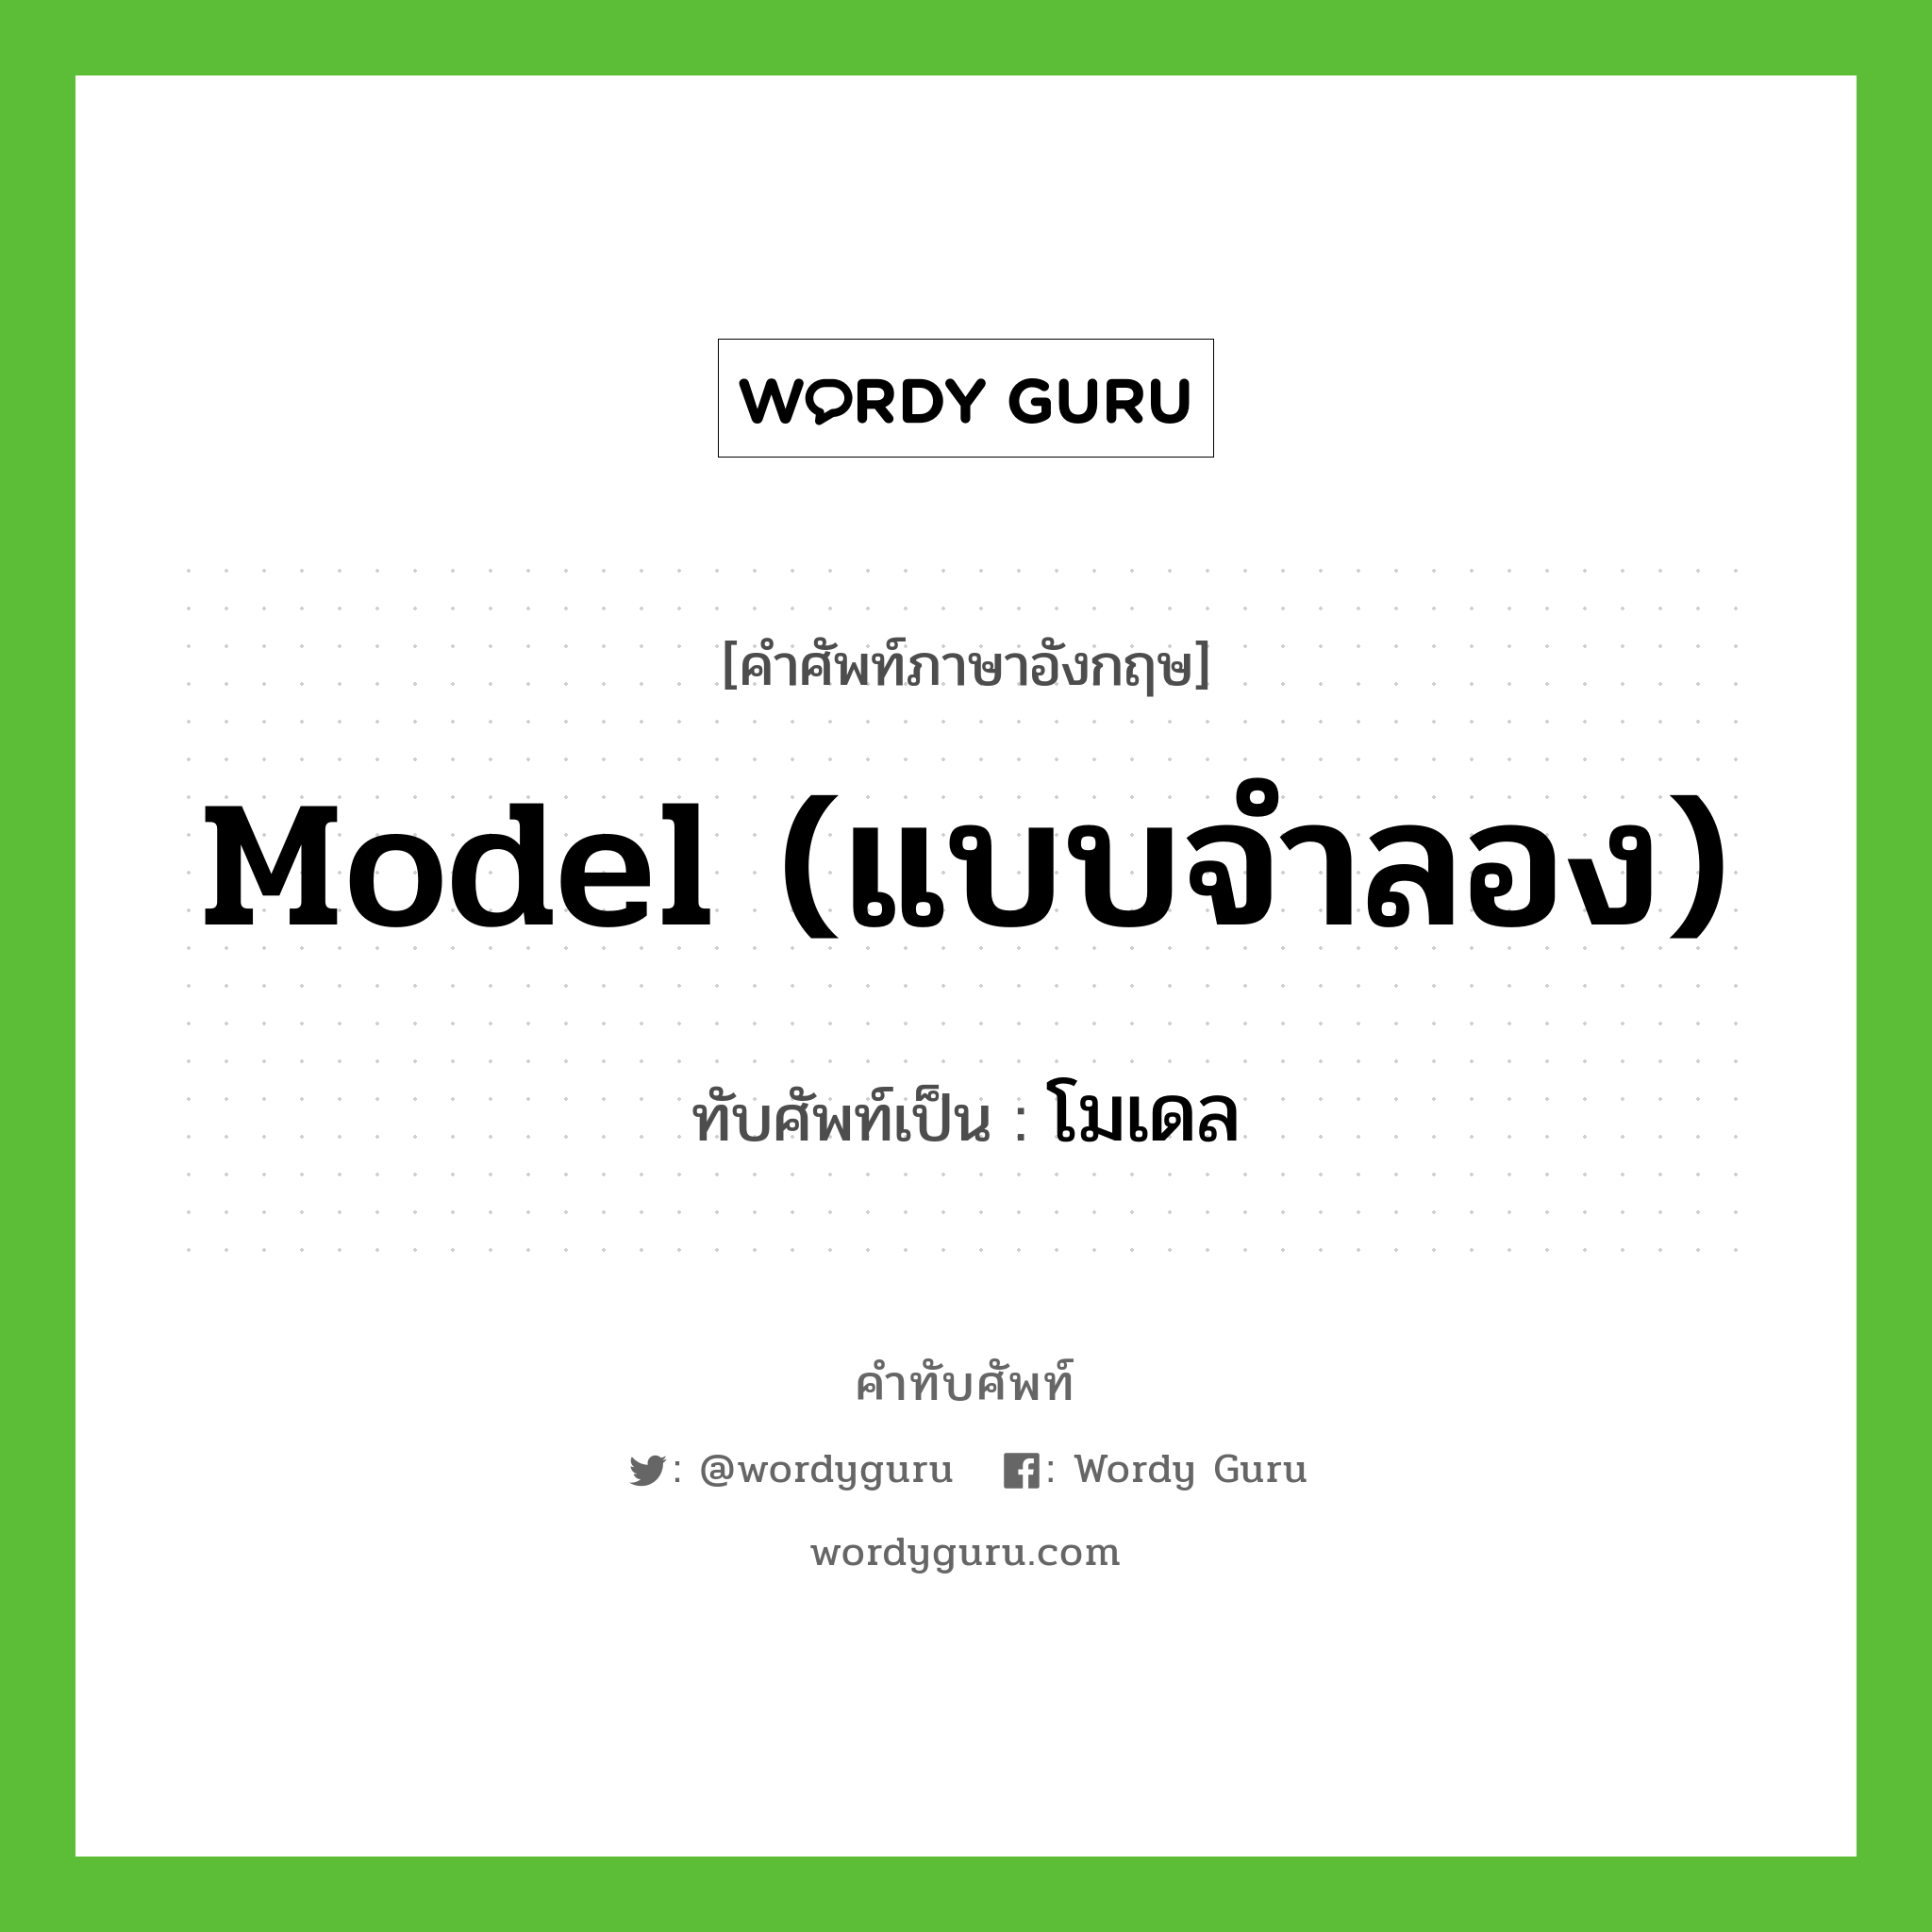 model (แบบจำลอง) เขียนเป็นคำไทยว่าอะไร?, คำศัพท์ภาษาอังกฤษ model (แบบจำลอง) ทับศัพท์เป็น โมเดล